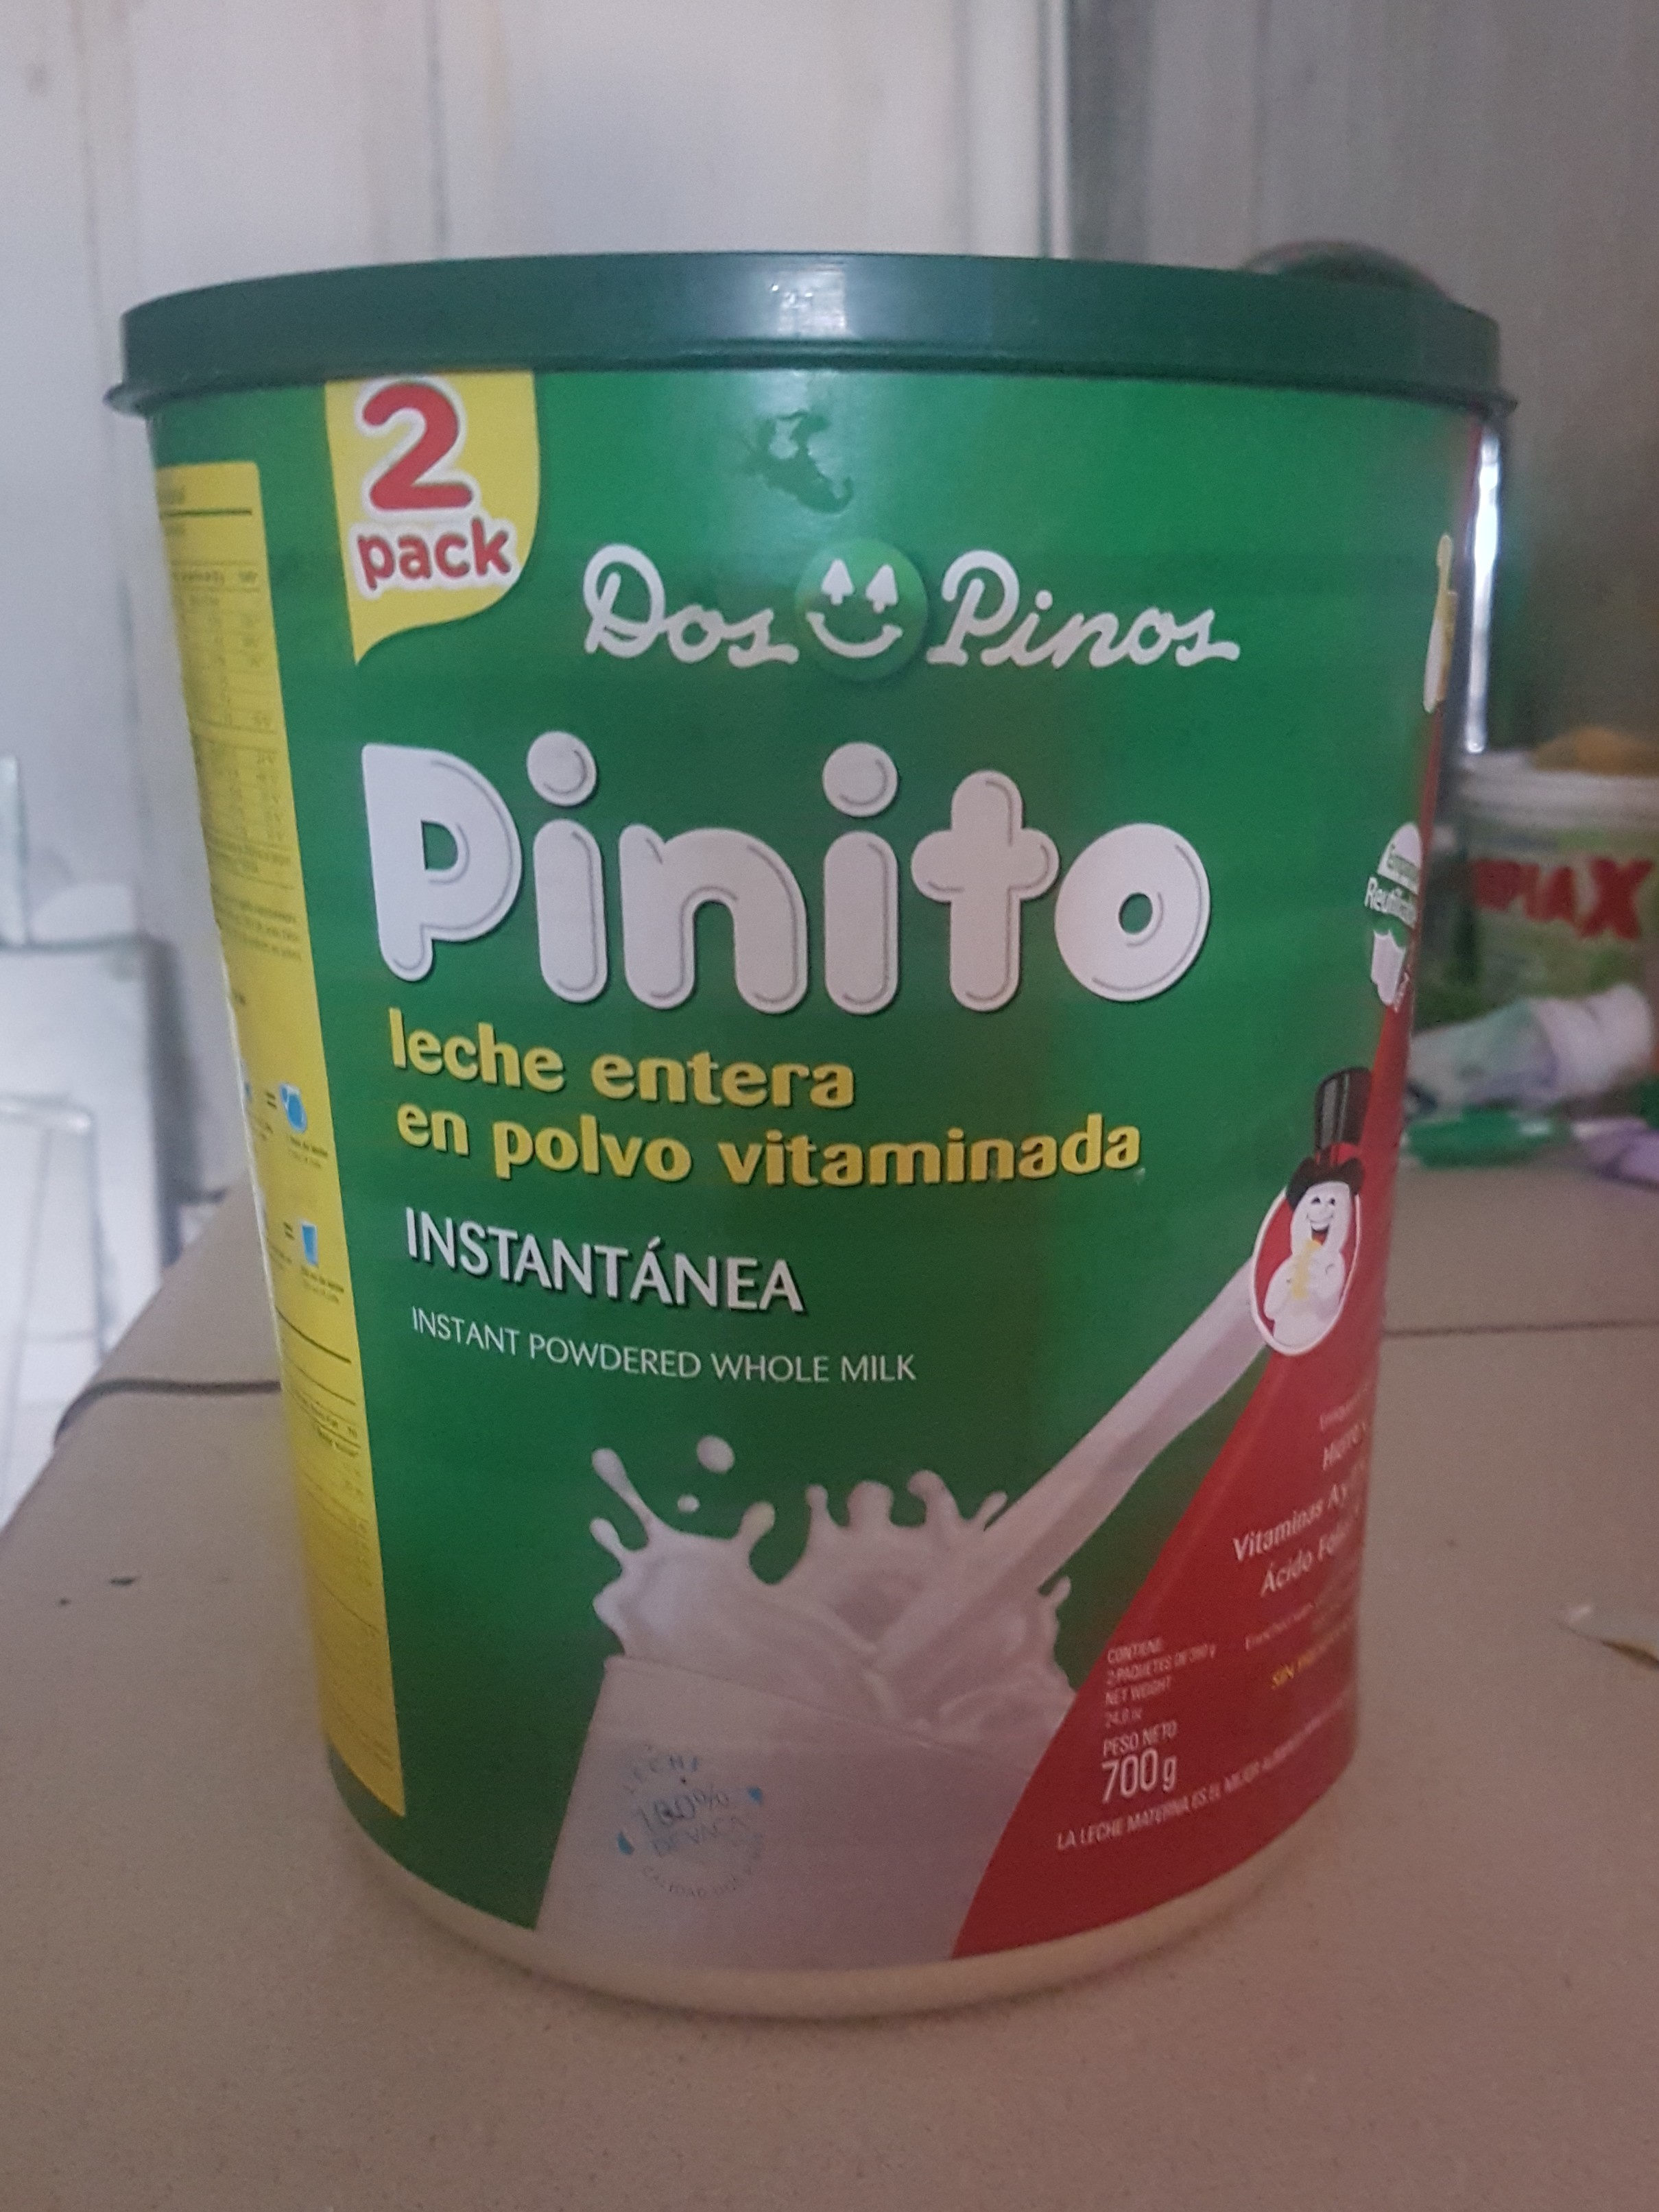 Pinito - Product - es